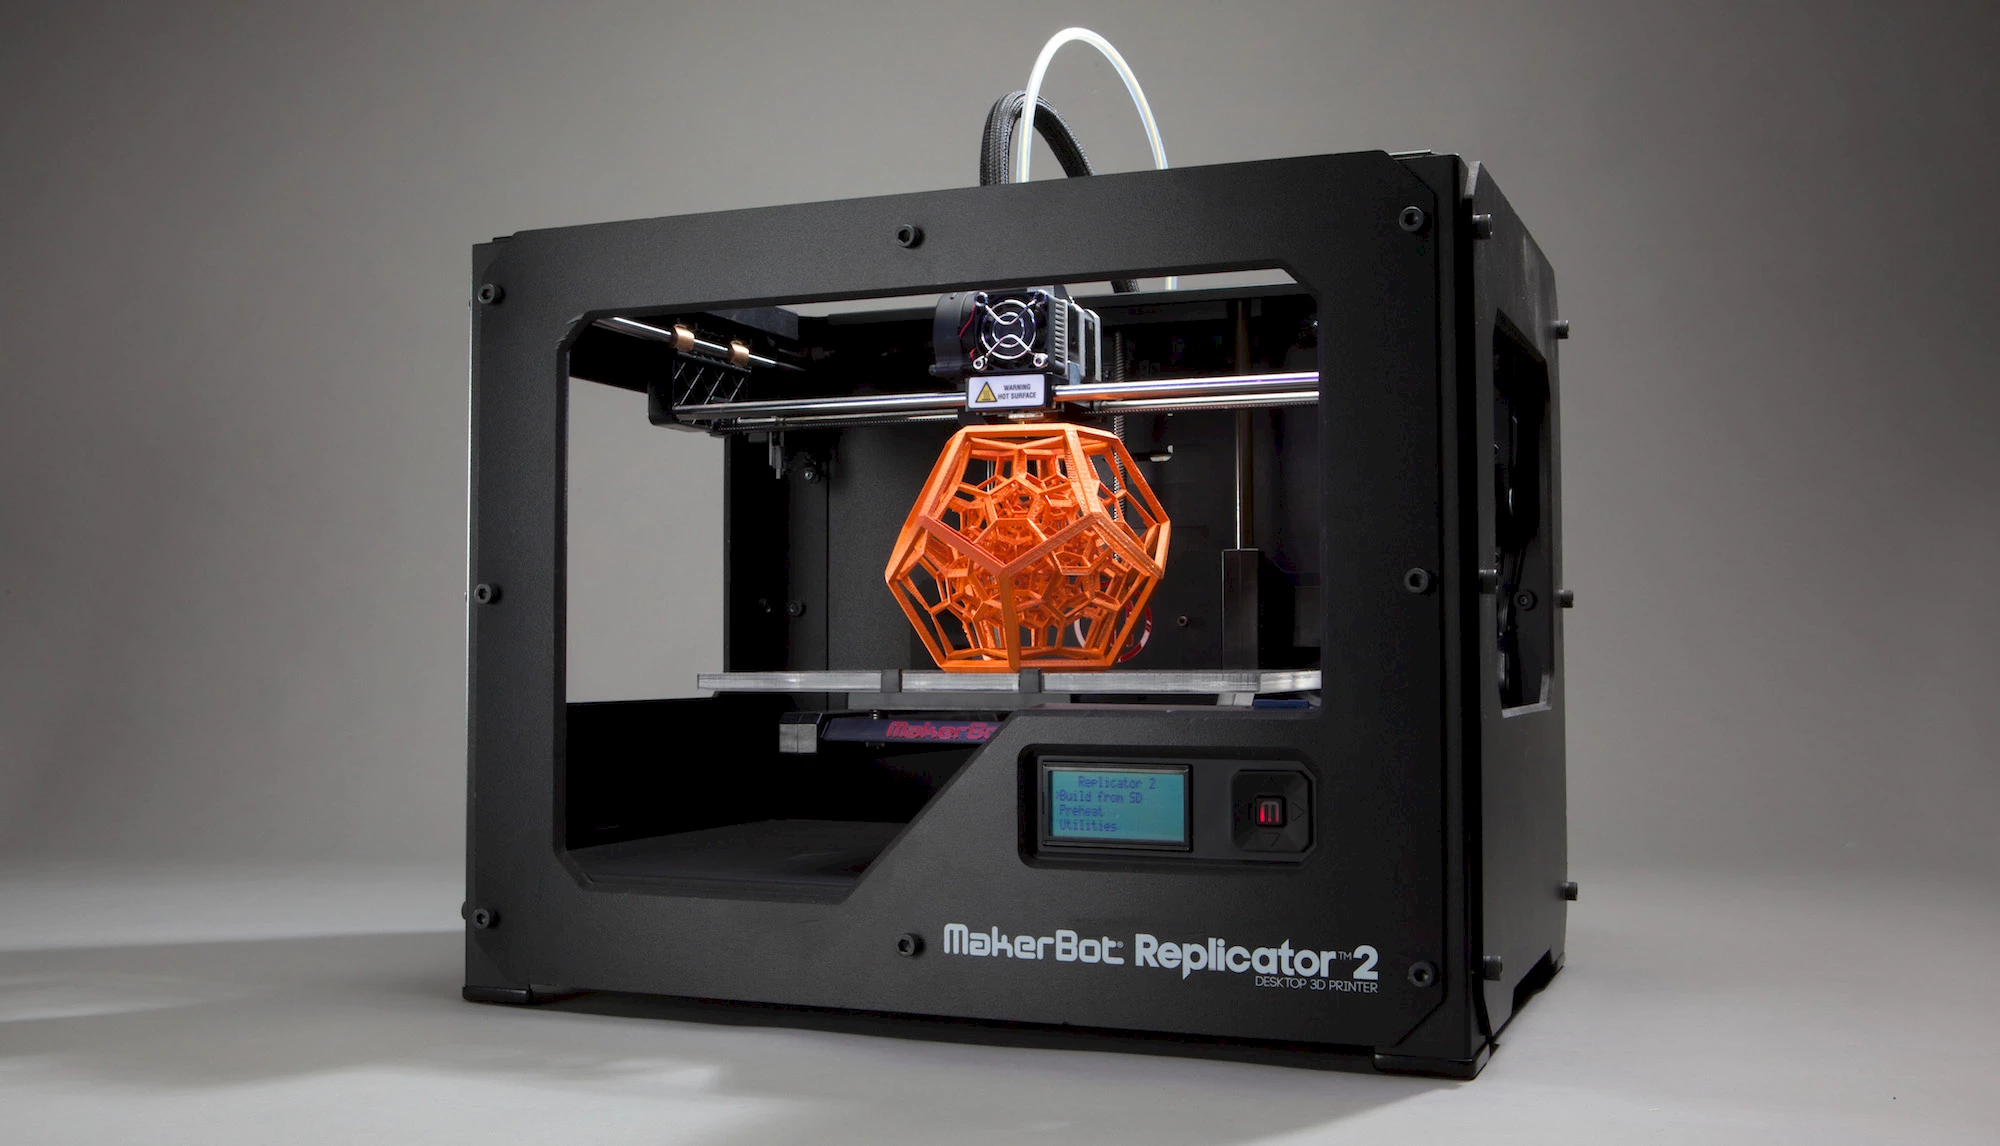 Makerbot Replicator 2, 3D printer.